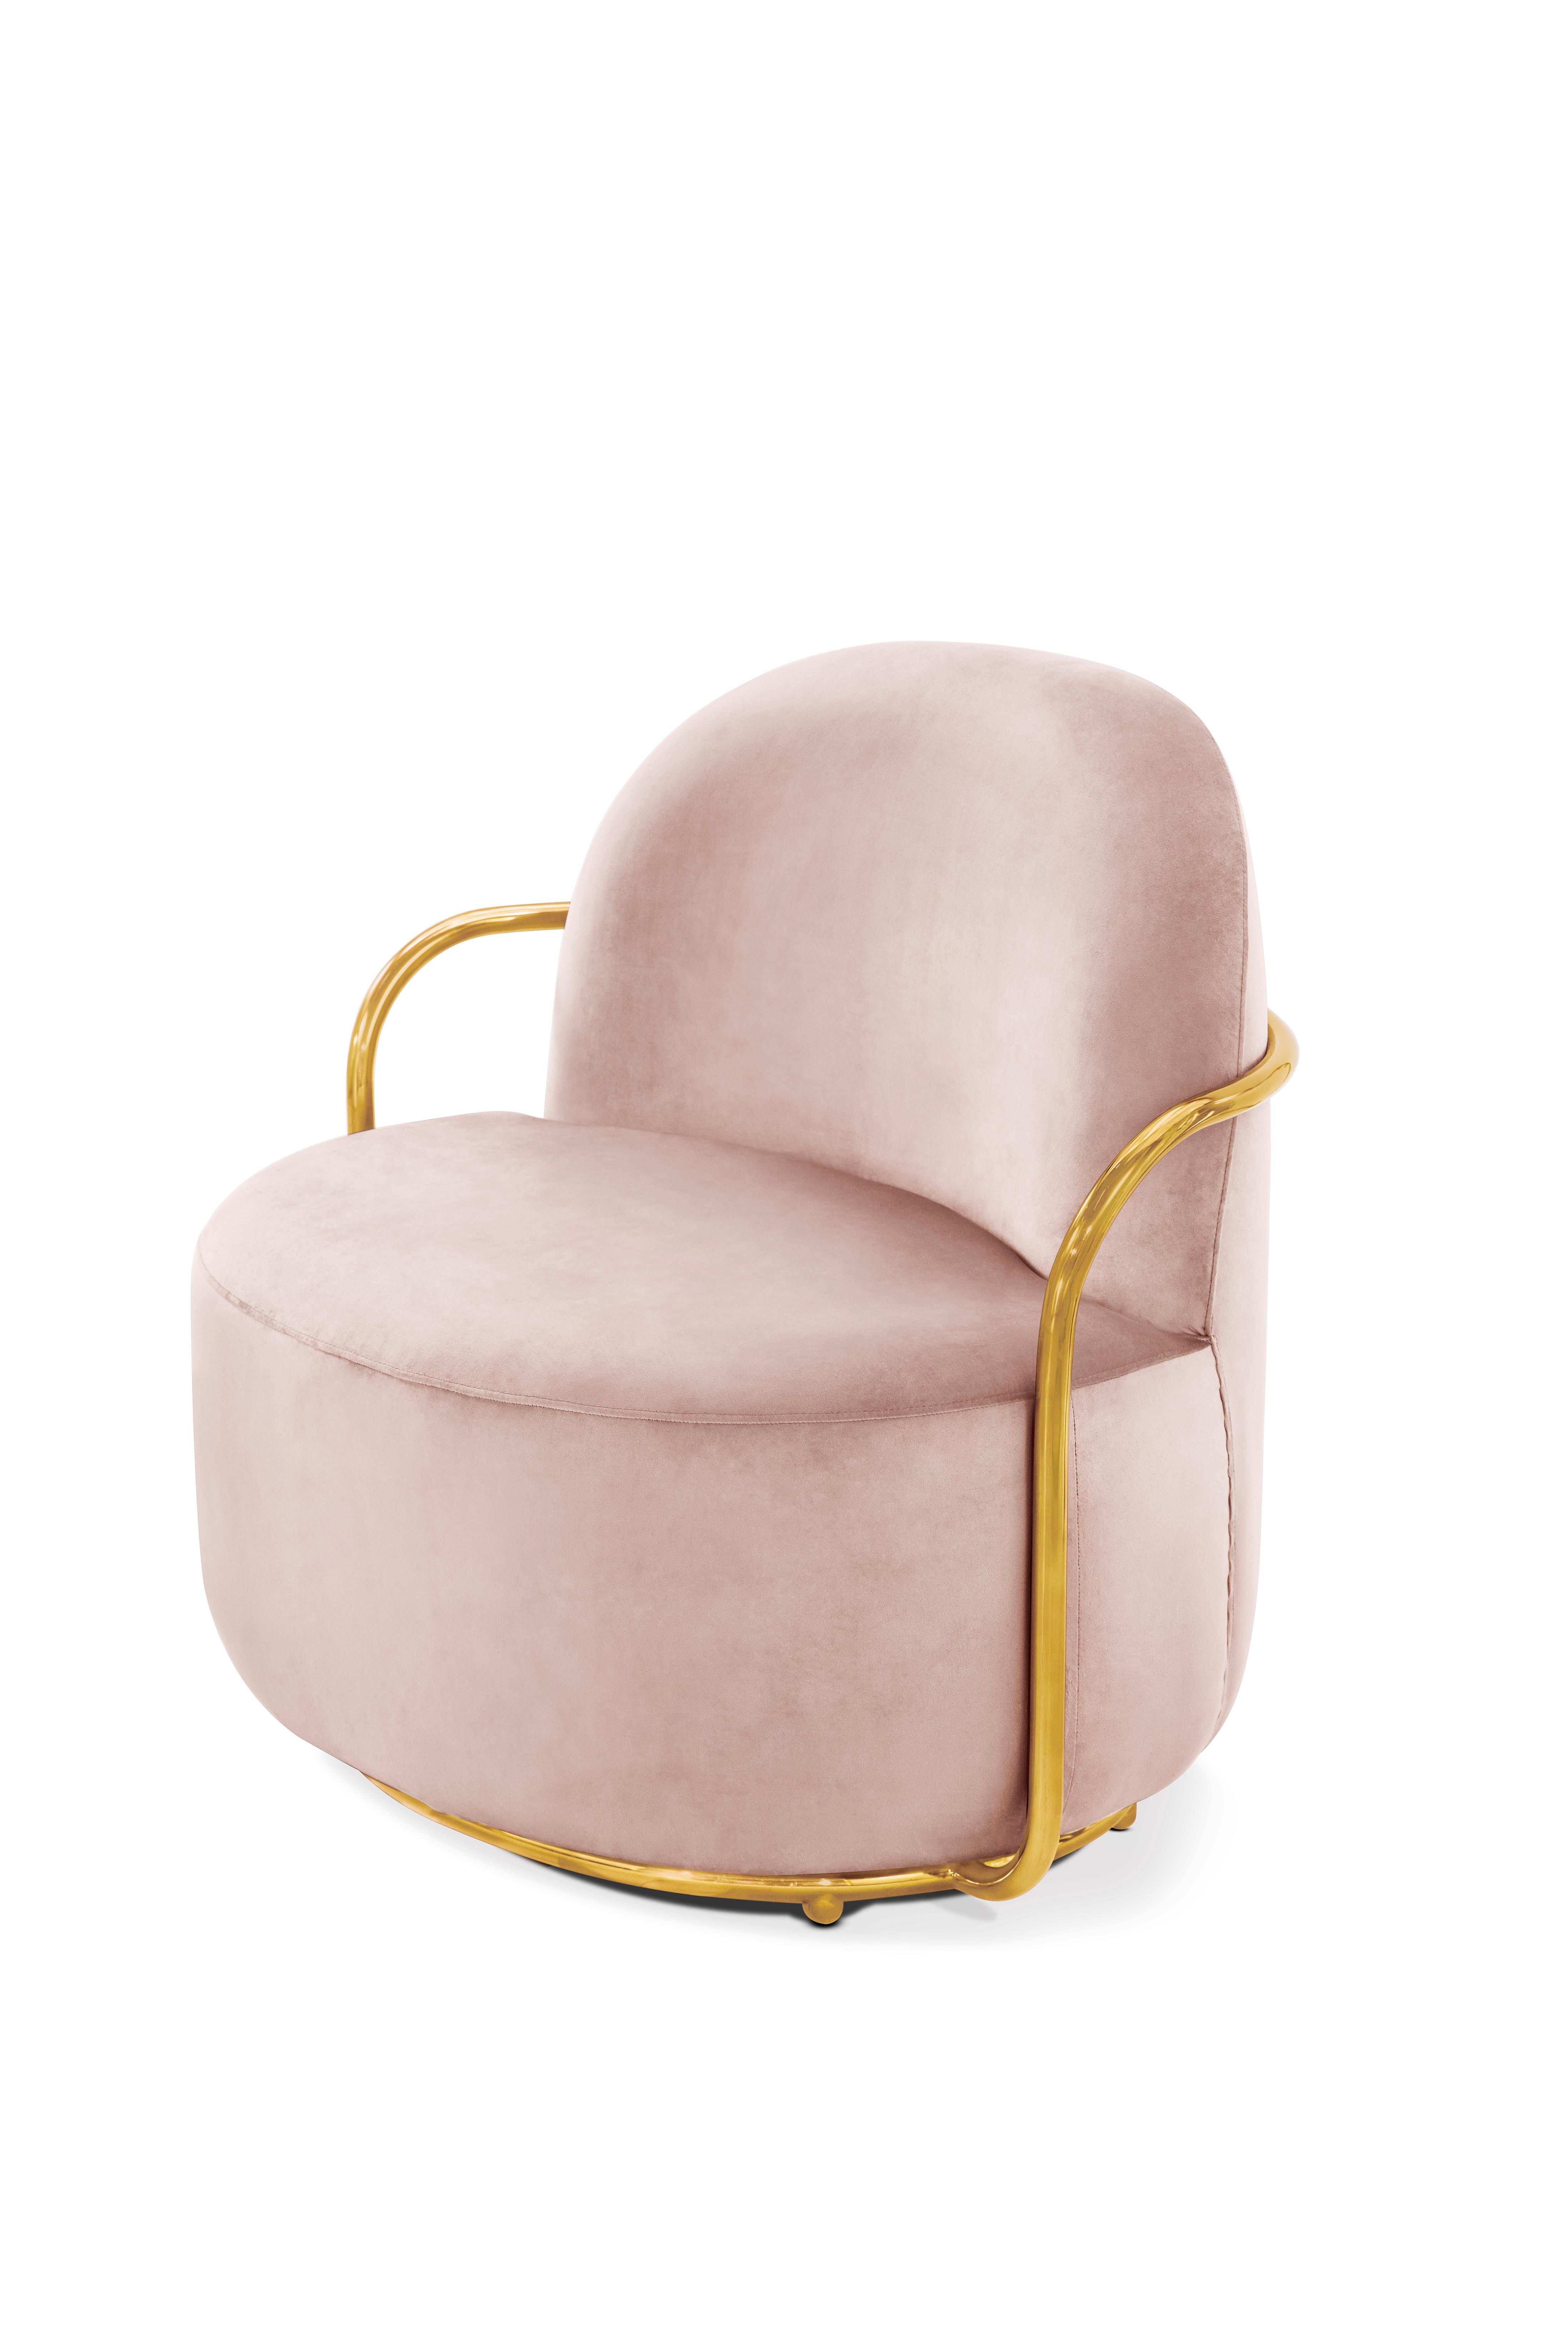 Der Orion Lounge Chair mit Plüschsamt in Rosa und goldenen Armlehnen von Nika Zupanc bietet ein hübsches Bild in blassrosa Samt und goldfarbenen Metallarmen.

Nika Zupanc, eine auffallend renommierte slowenische Designerin, scheut sich nicht, den